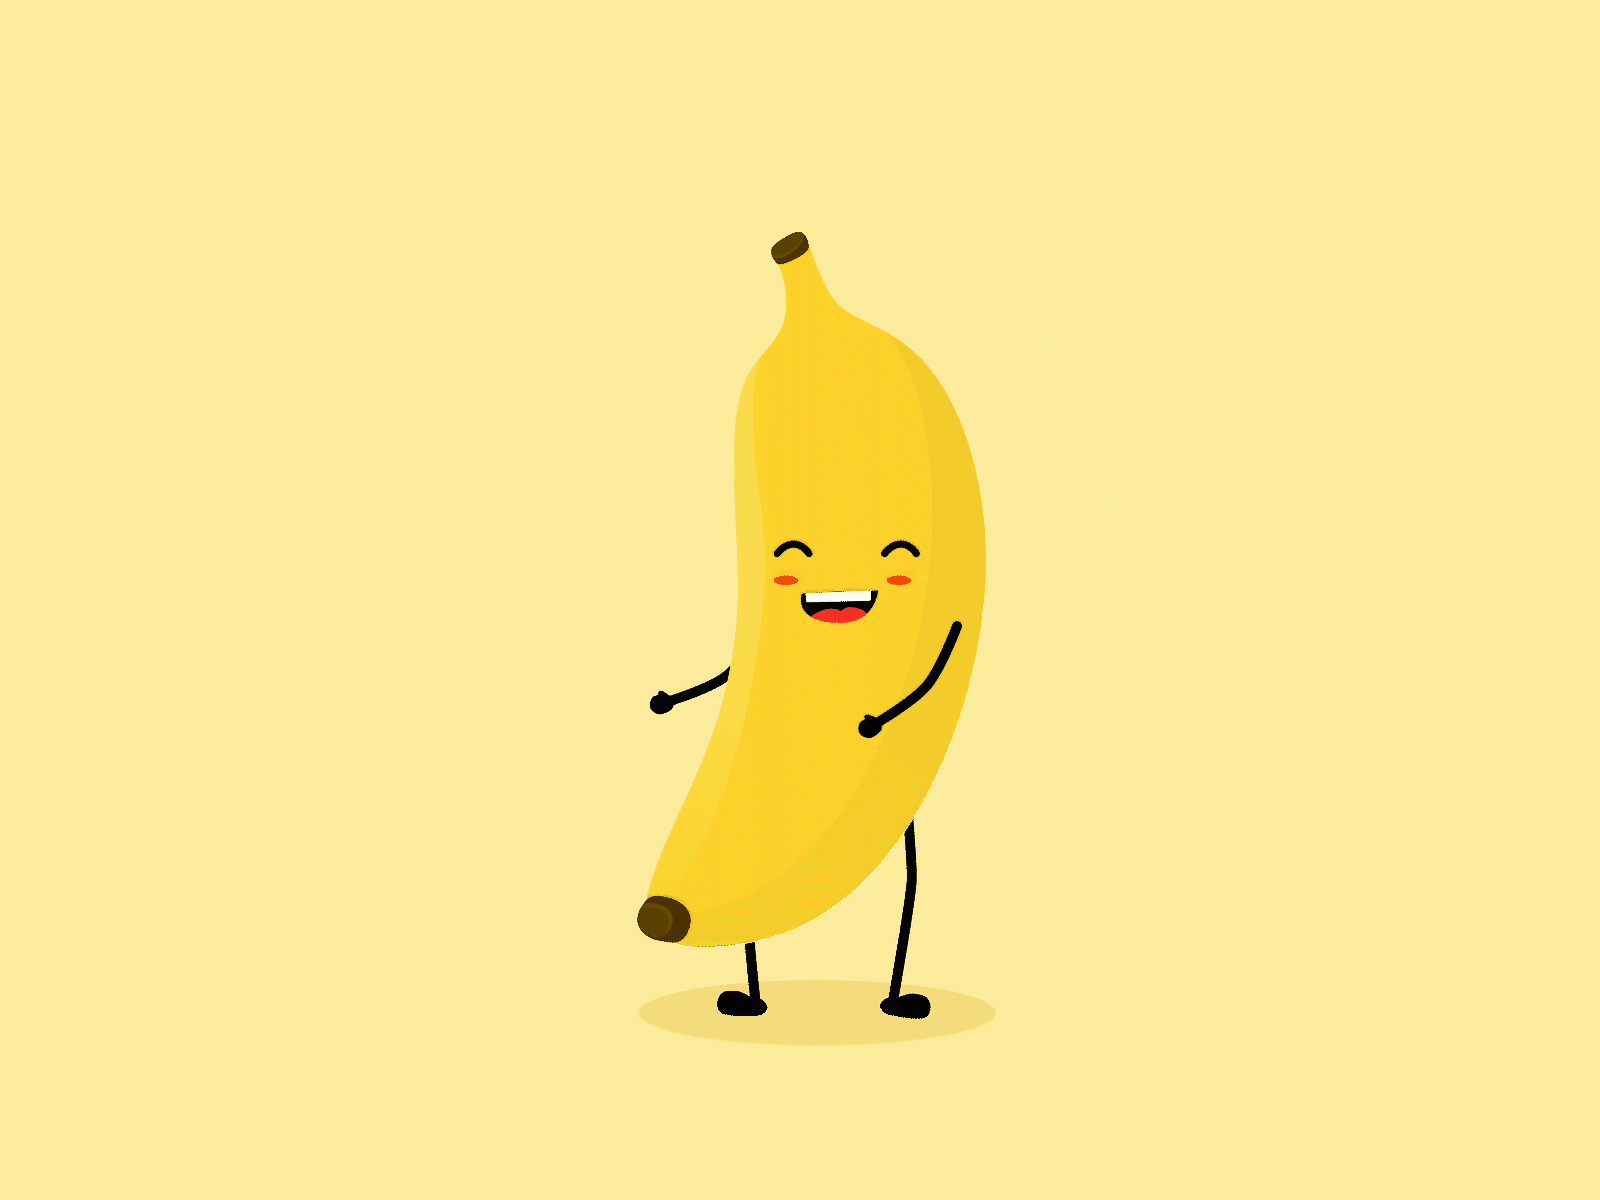 Banana Animation animation banana character dance gif illustration motion graphics yellow